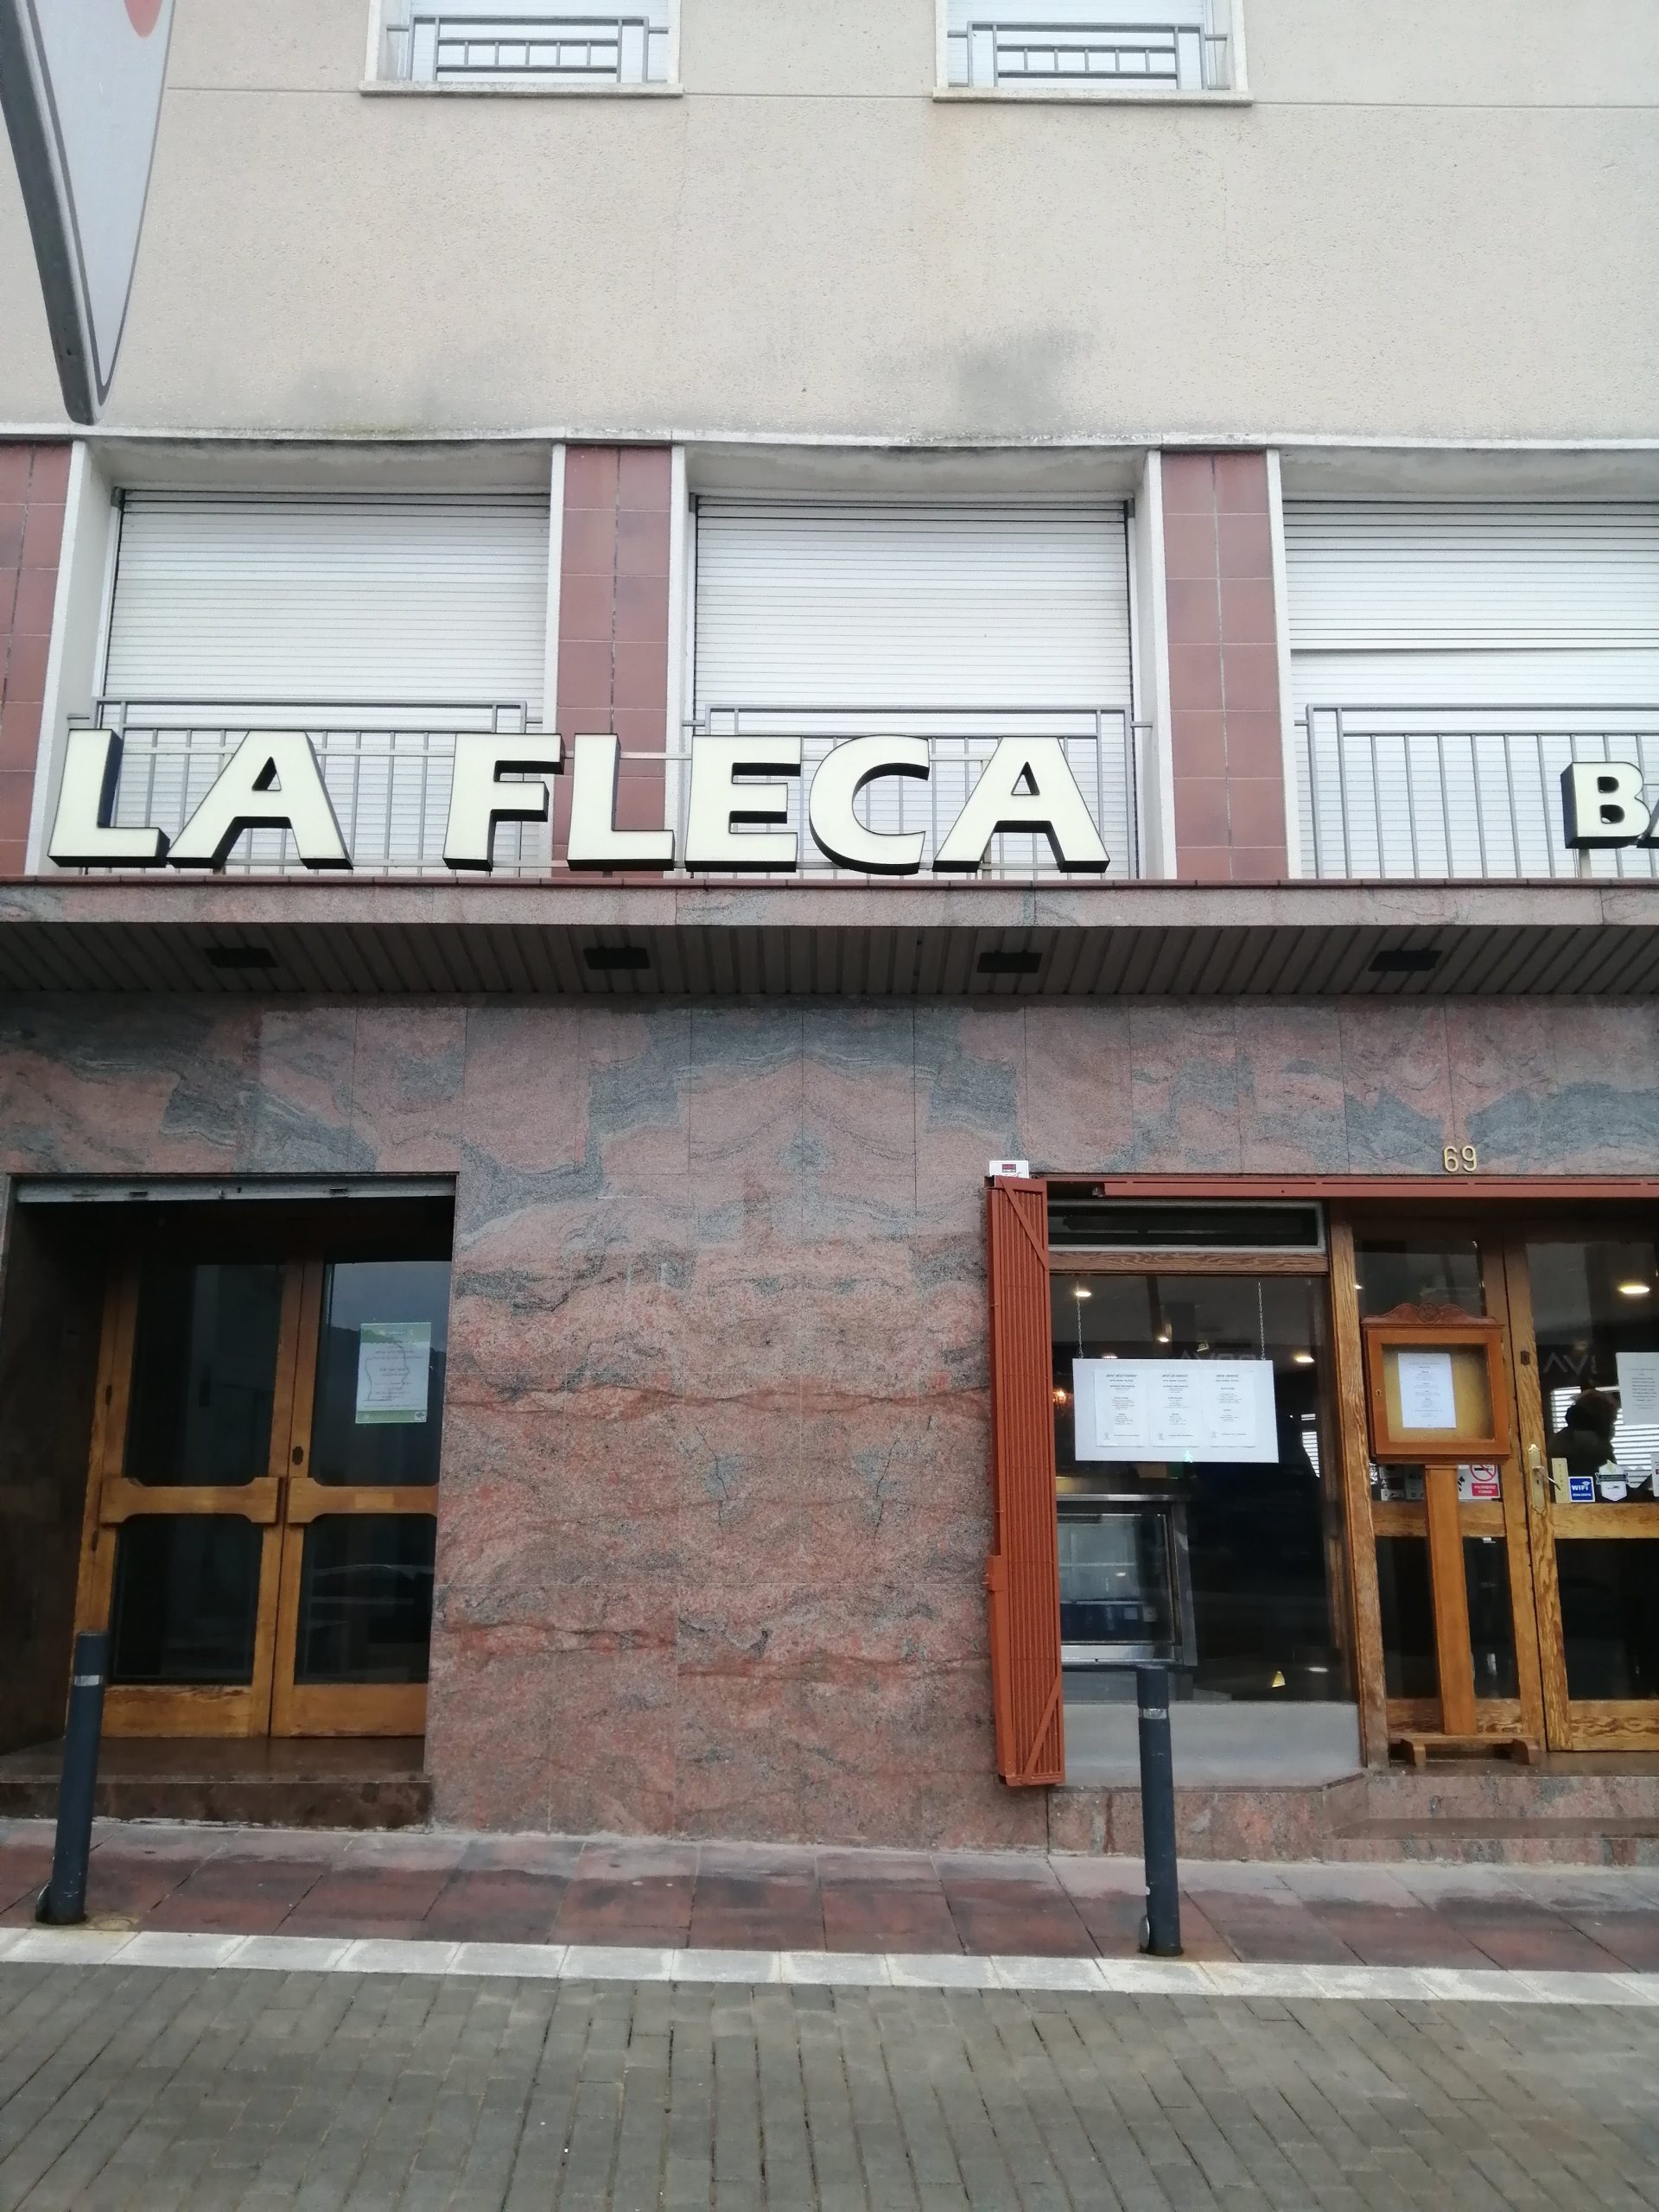 Restaurant La Fleca